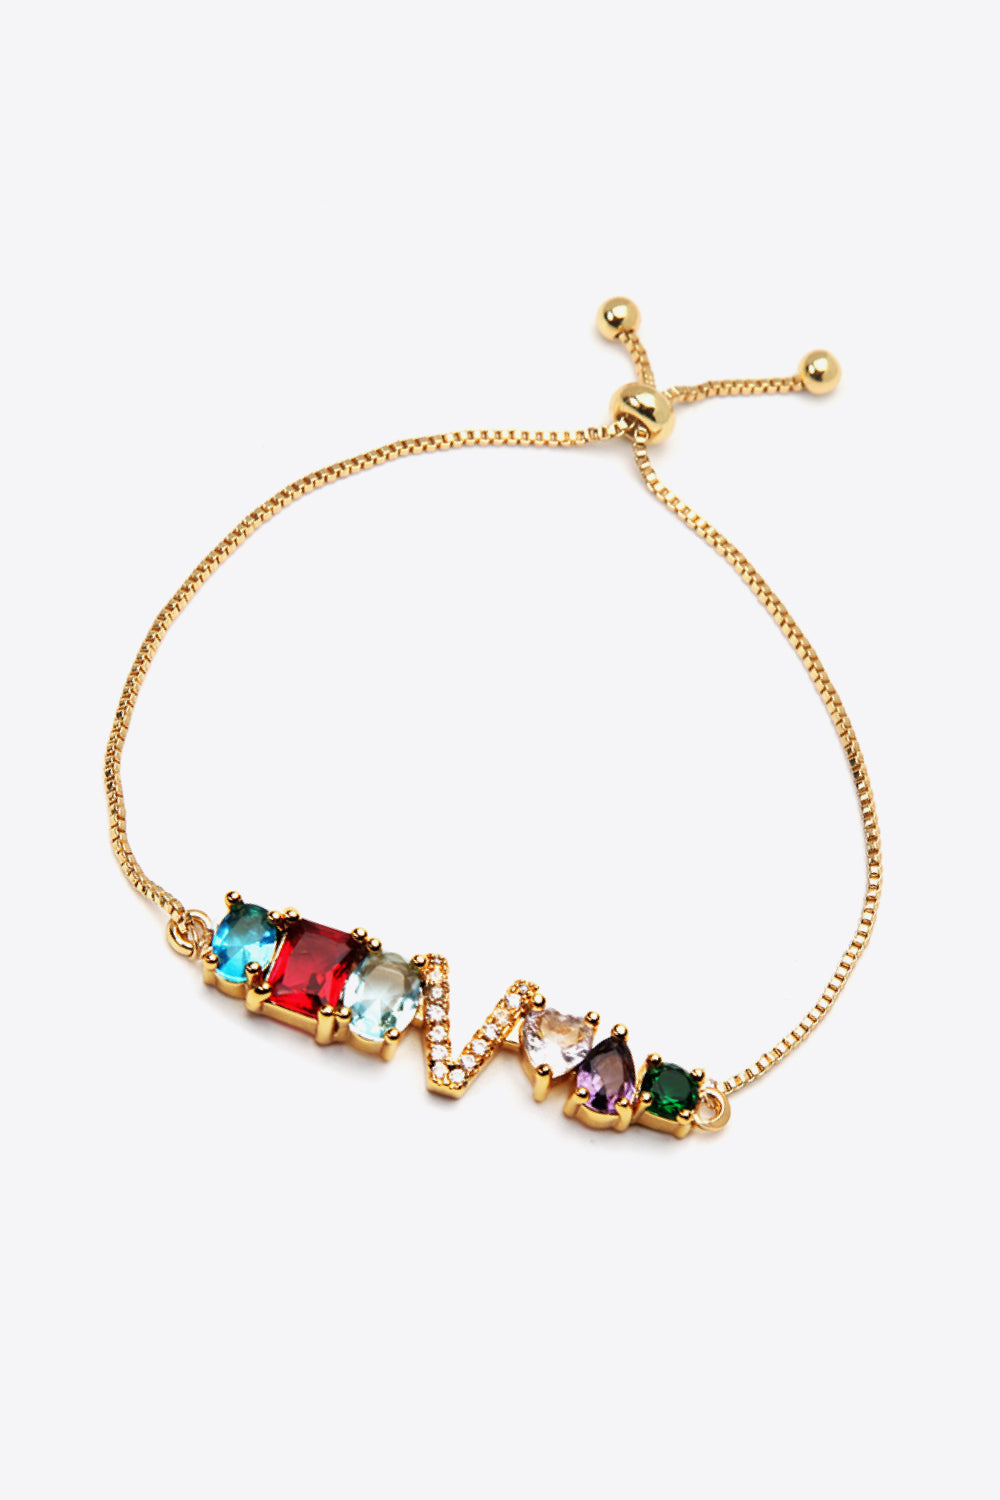 U to Z Zircon Bracelet - Women’s Jewelry - Bracelets - 5 - 2024